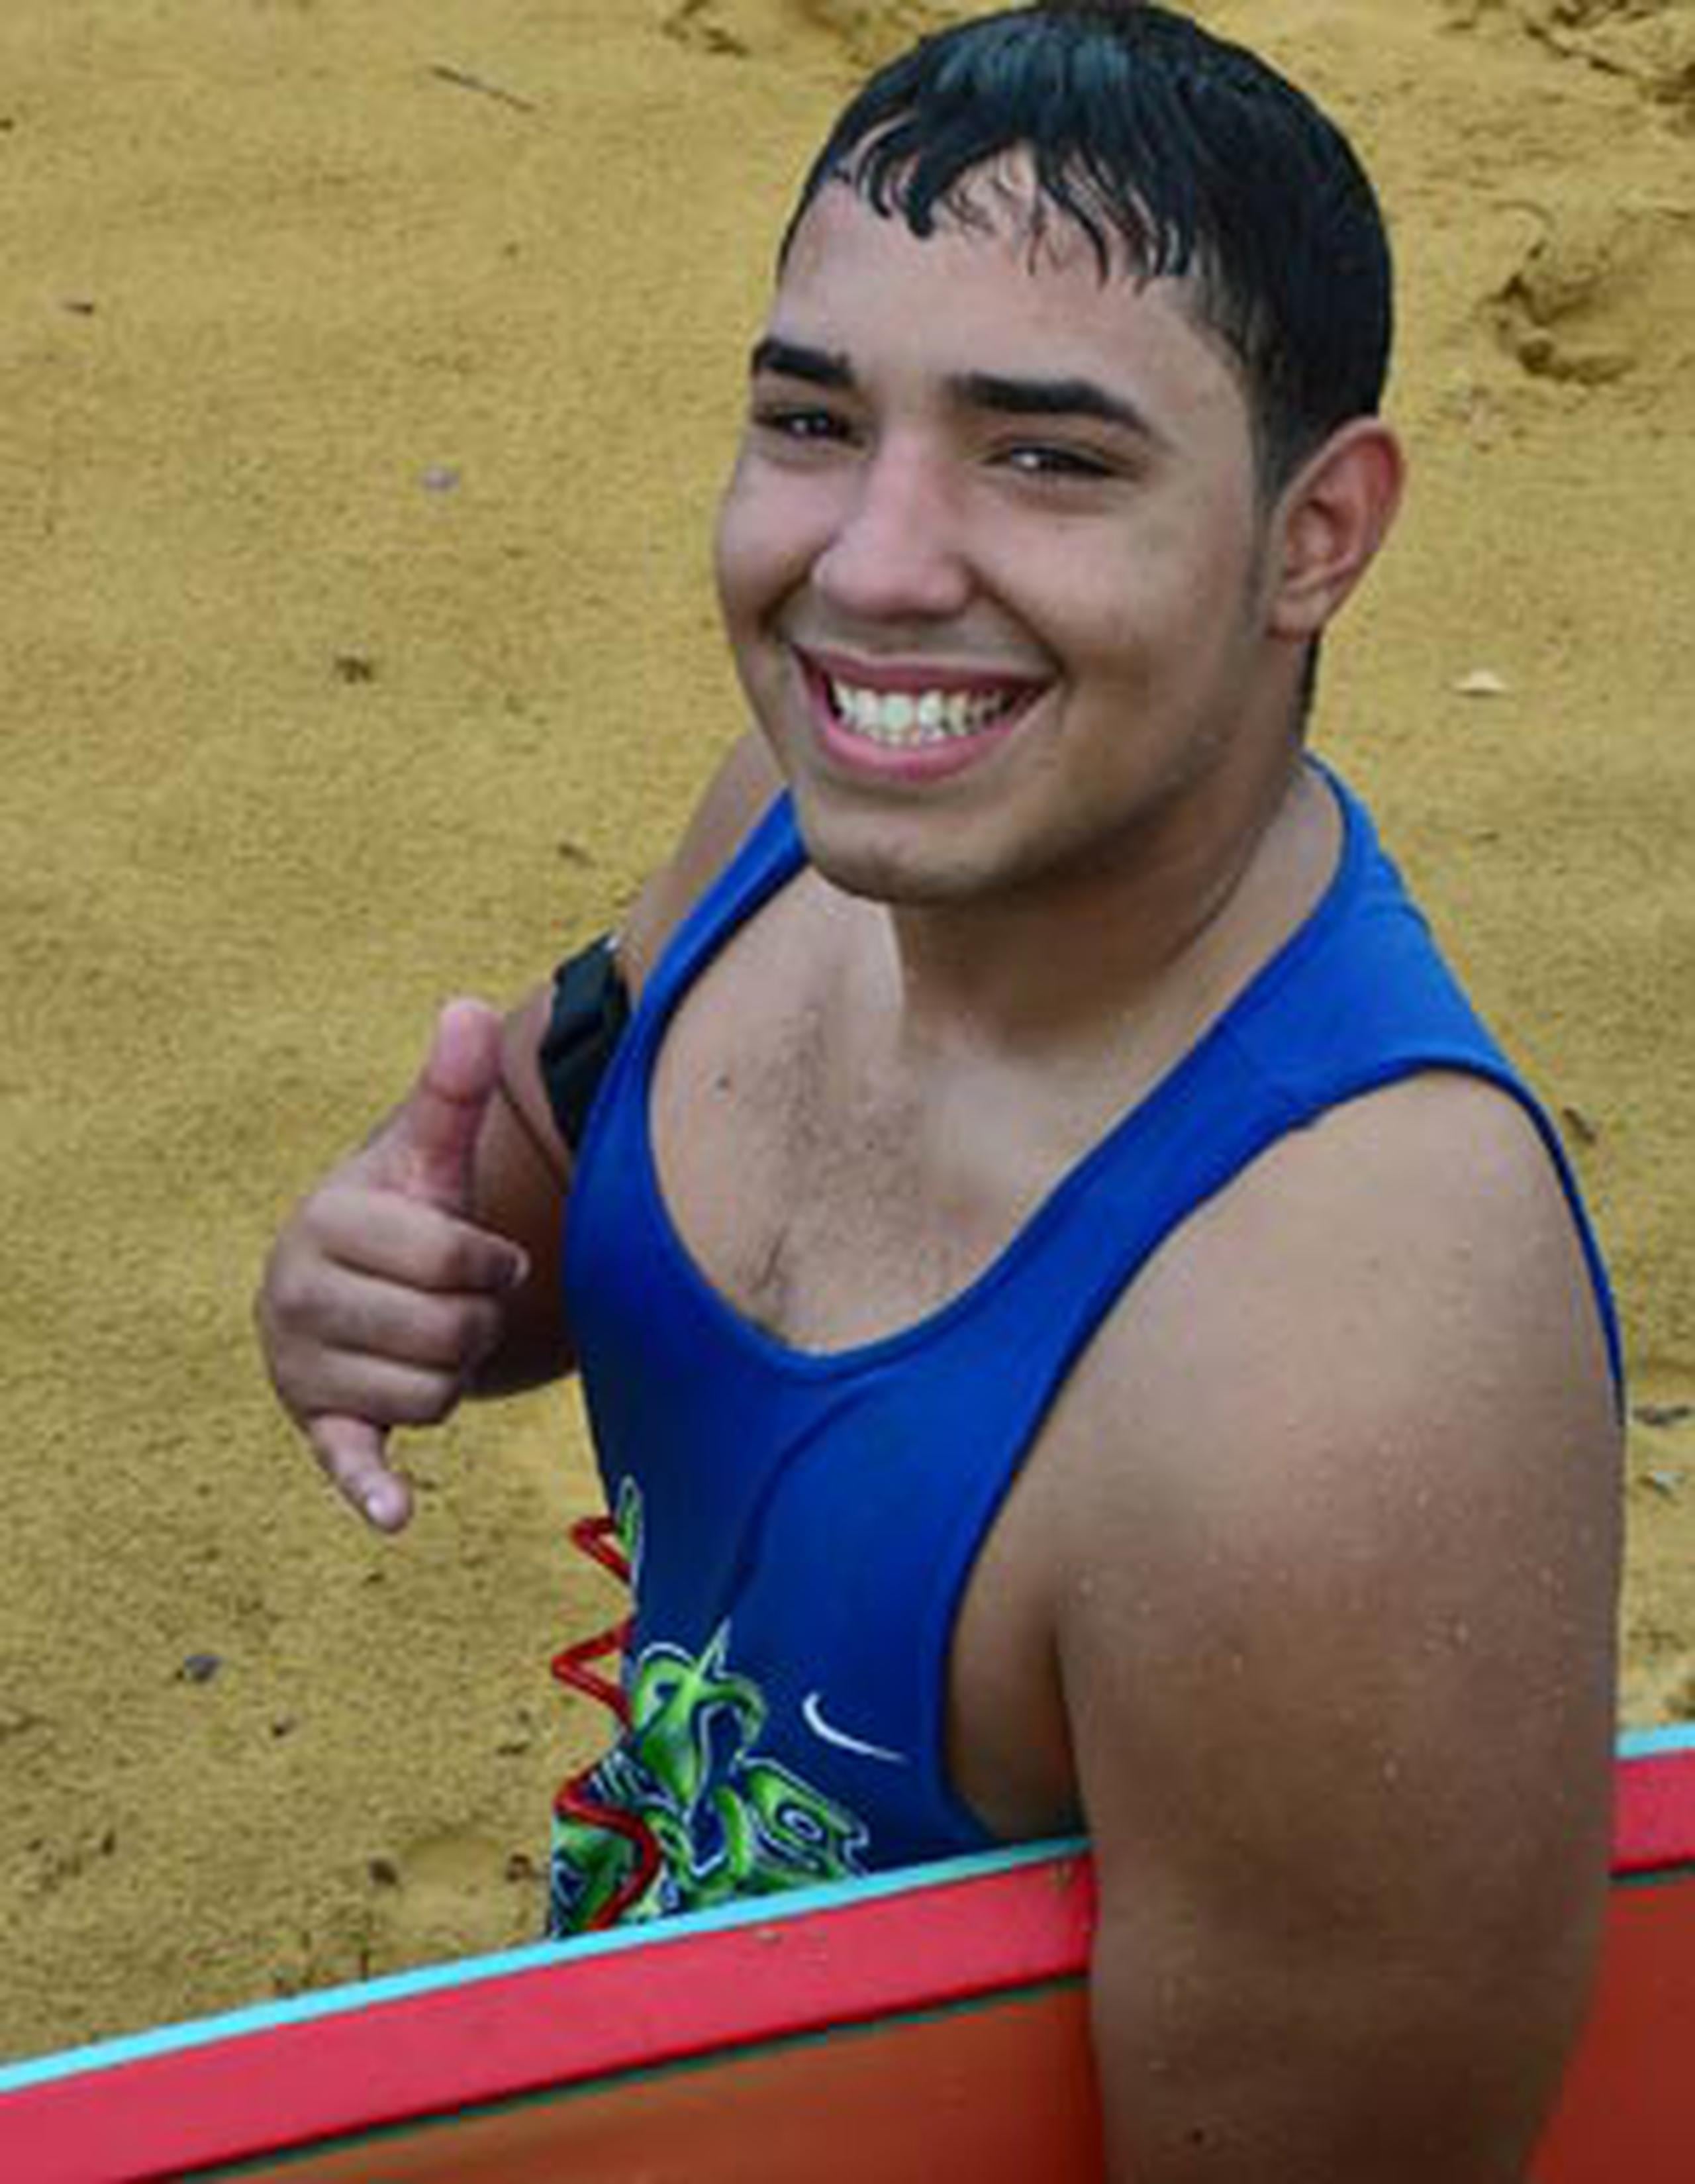 Raúl Cepeda, de 20 años, visitó hoy la playa La Pared de Luquillo para practicar el deporte del surfing. (luis.alcaladelolmo@gfrmedia.com)